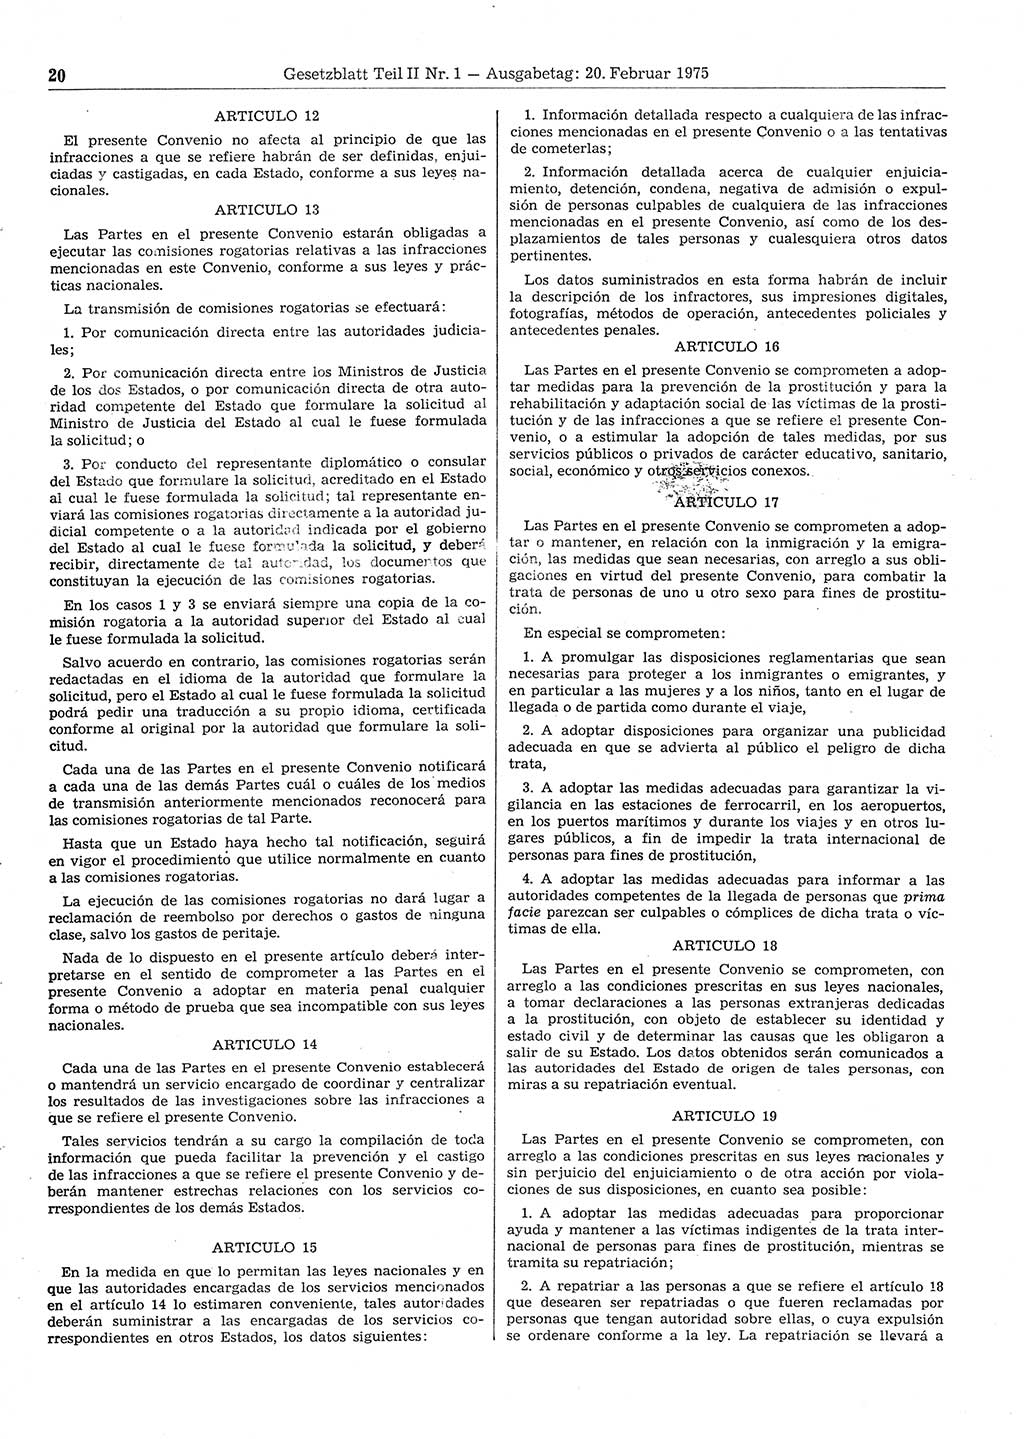 Gesetzblatt (GBl.) der Deutschen Demokratischen Republik (DDR) Teil ⅠⅠ 1975, Seite 20 (GBl. DDR ⅠⅠ 1975, S. 20)